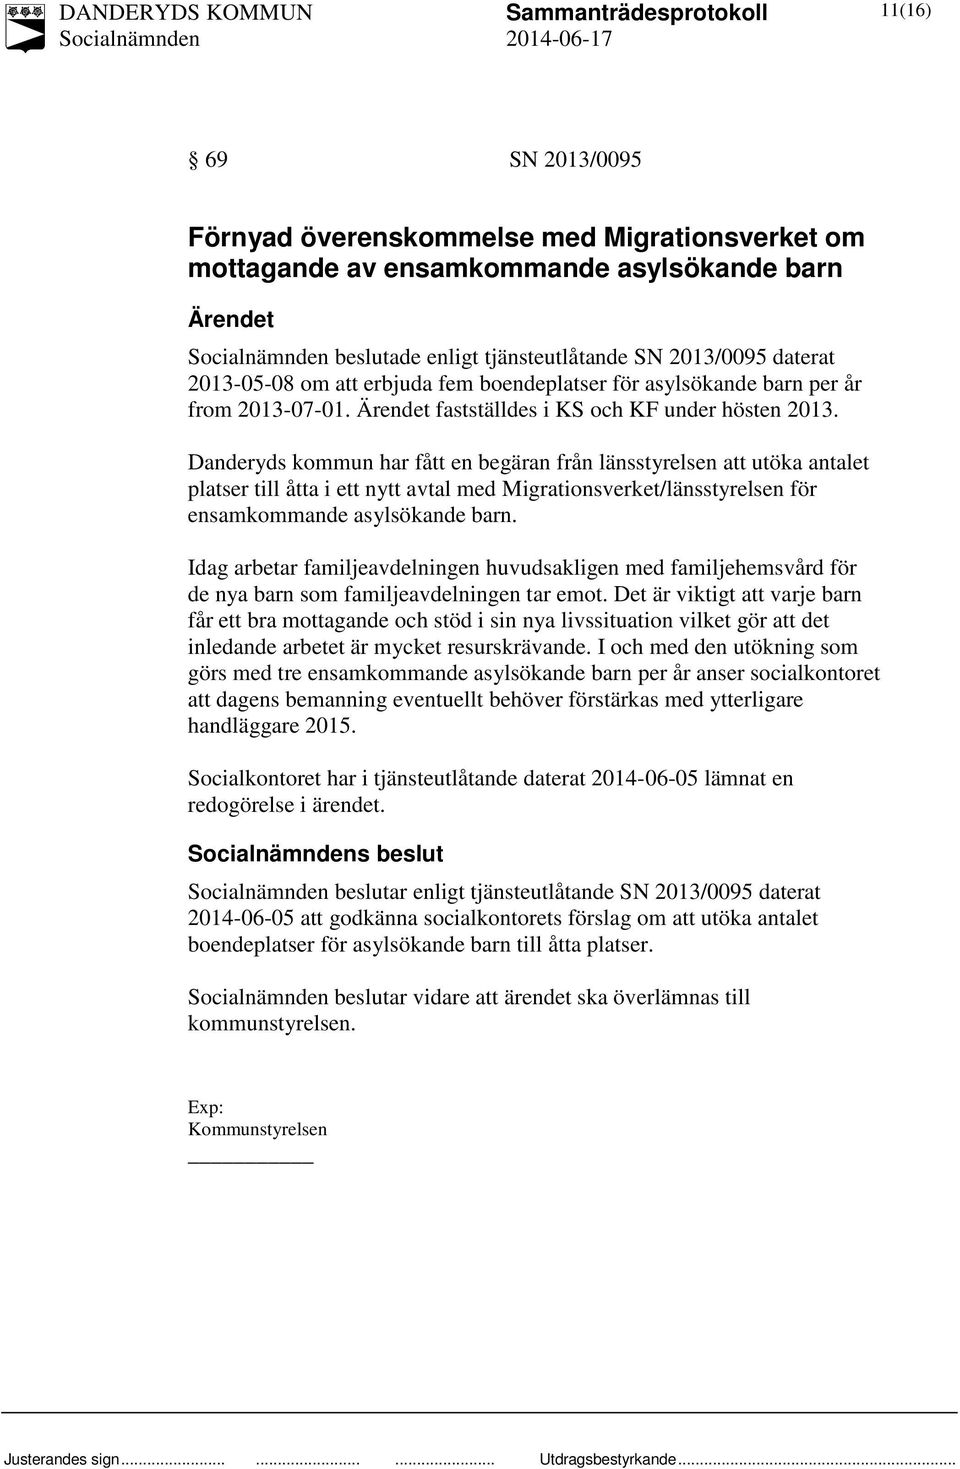 Danderyds kommun har fått en begäran från länsstyrelsen att utöka antalet platser till åtta i ett nytt avtal med Migrationsverket/länsstyrelsen för ensamkommande asylsökande barn.